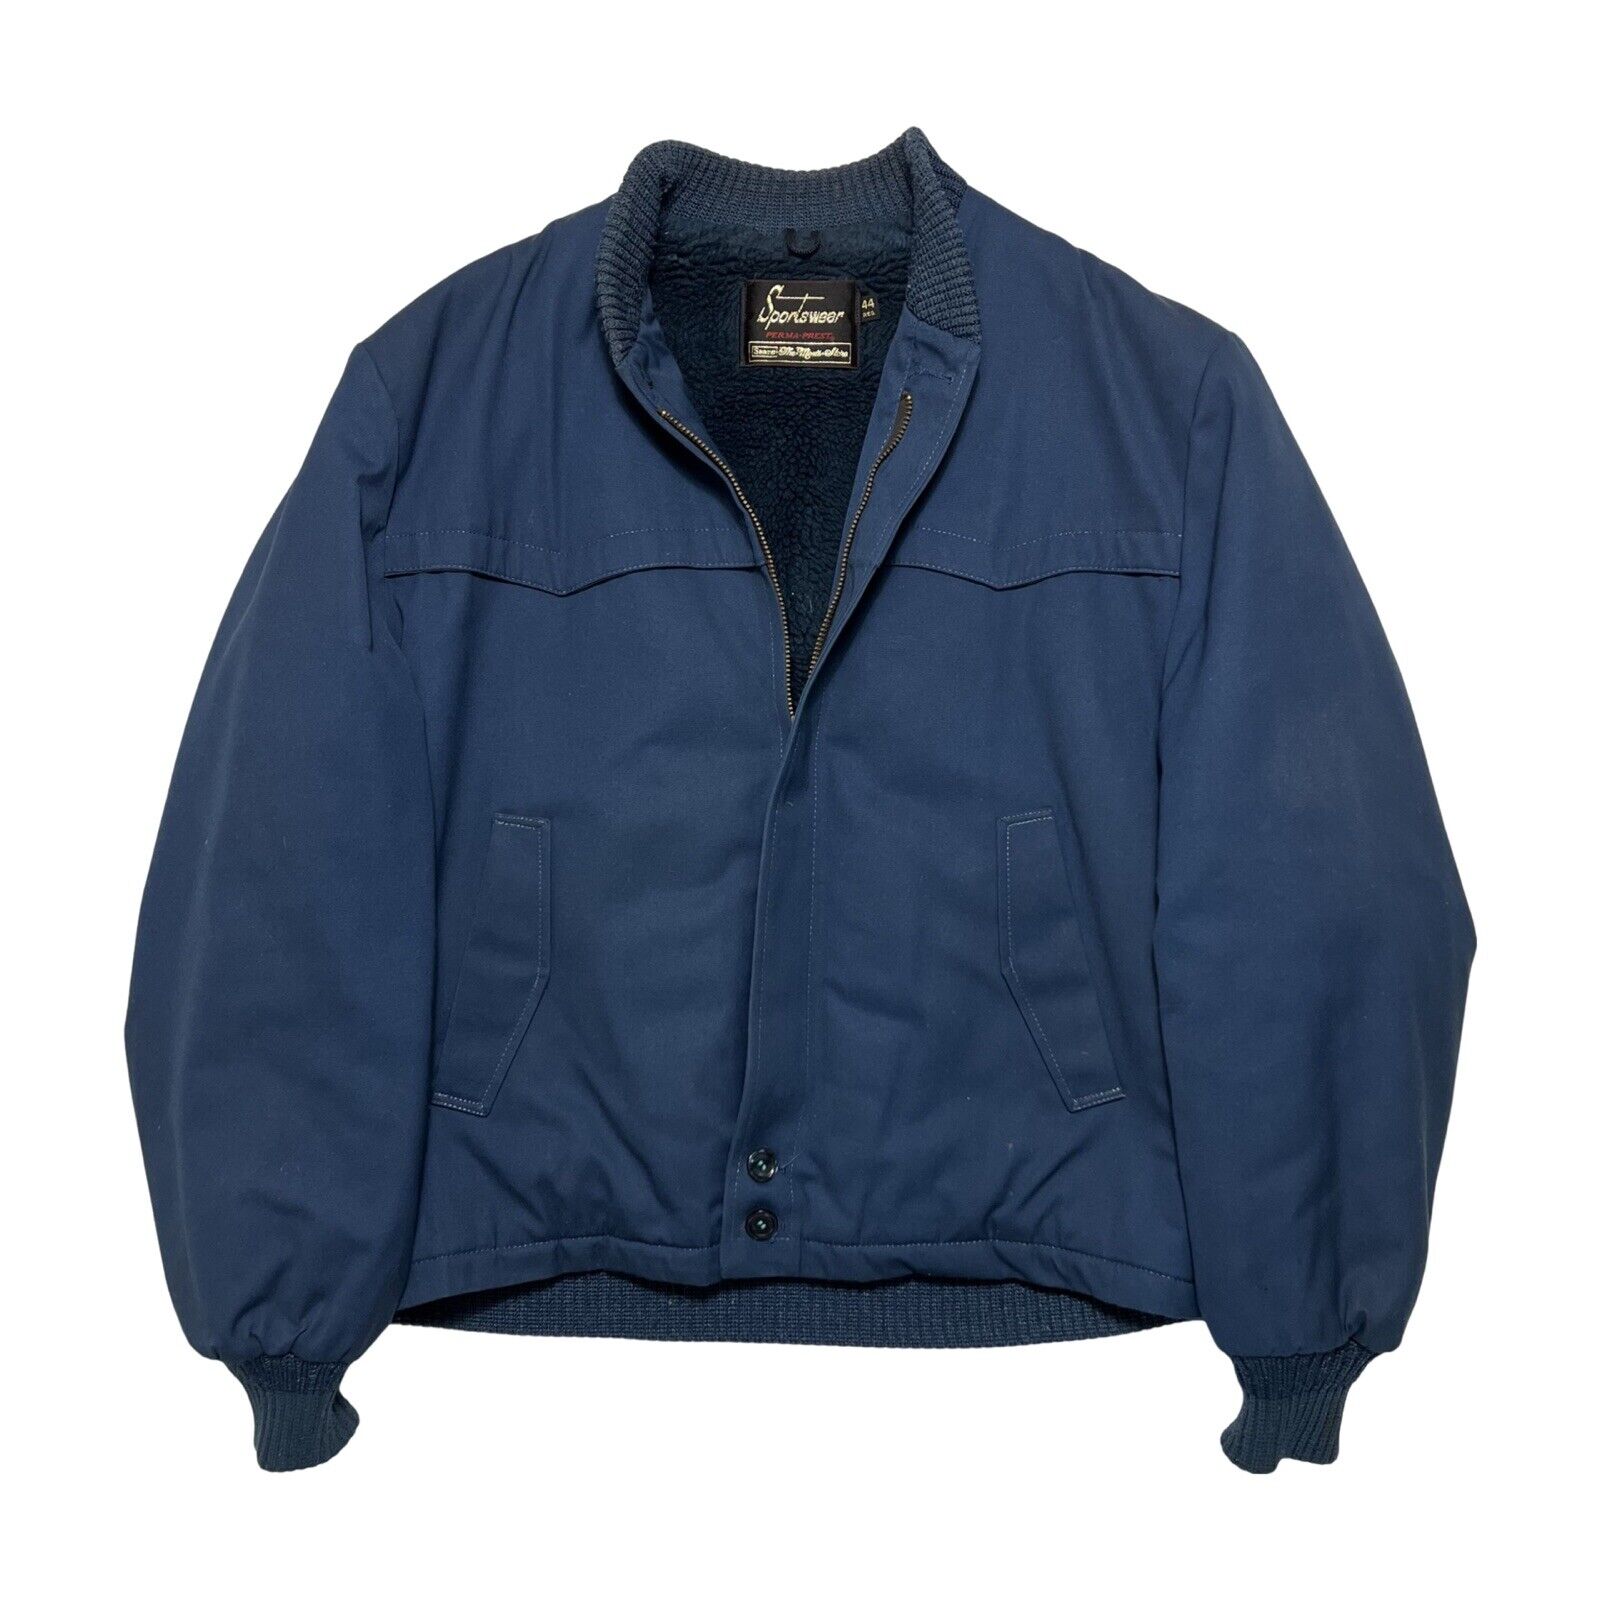 Vintage 70s Sears Perma Prest Sportswear Ricky Jacket Blue Sz 44 Lined